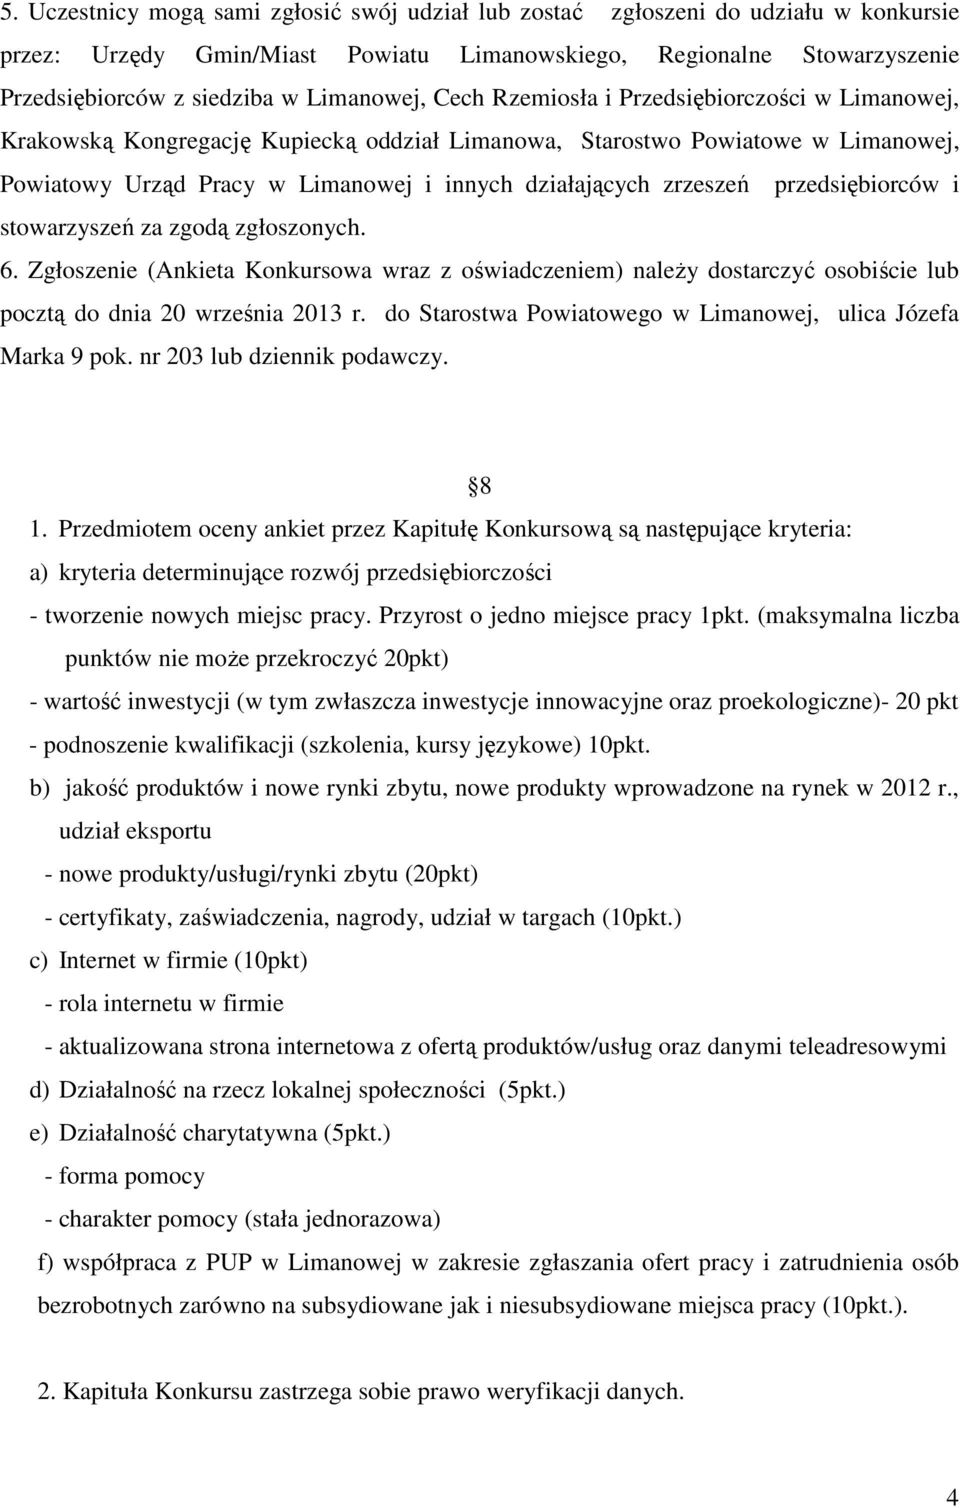 zrzeszeń przedsiębiorców i stowarzyszeń za zgodą zgłoszonych. 6. Zgłoszenie (Ankieta Konkursowa wraz z oświadczeniem) należy dostarczyć osobiście lub pocztą do dnia 20 września 2013 r.